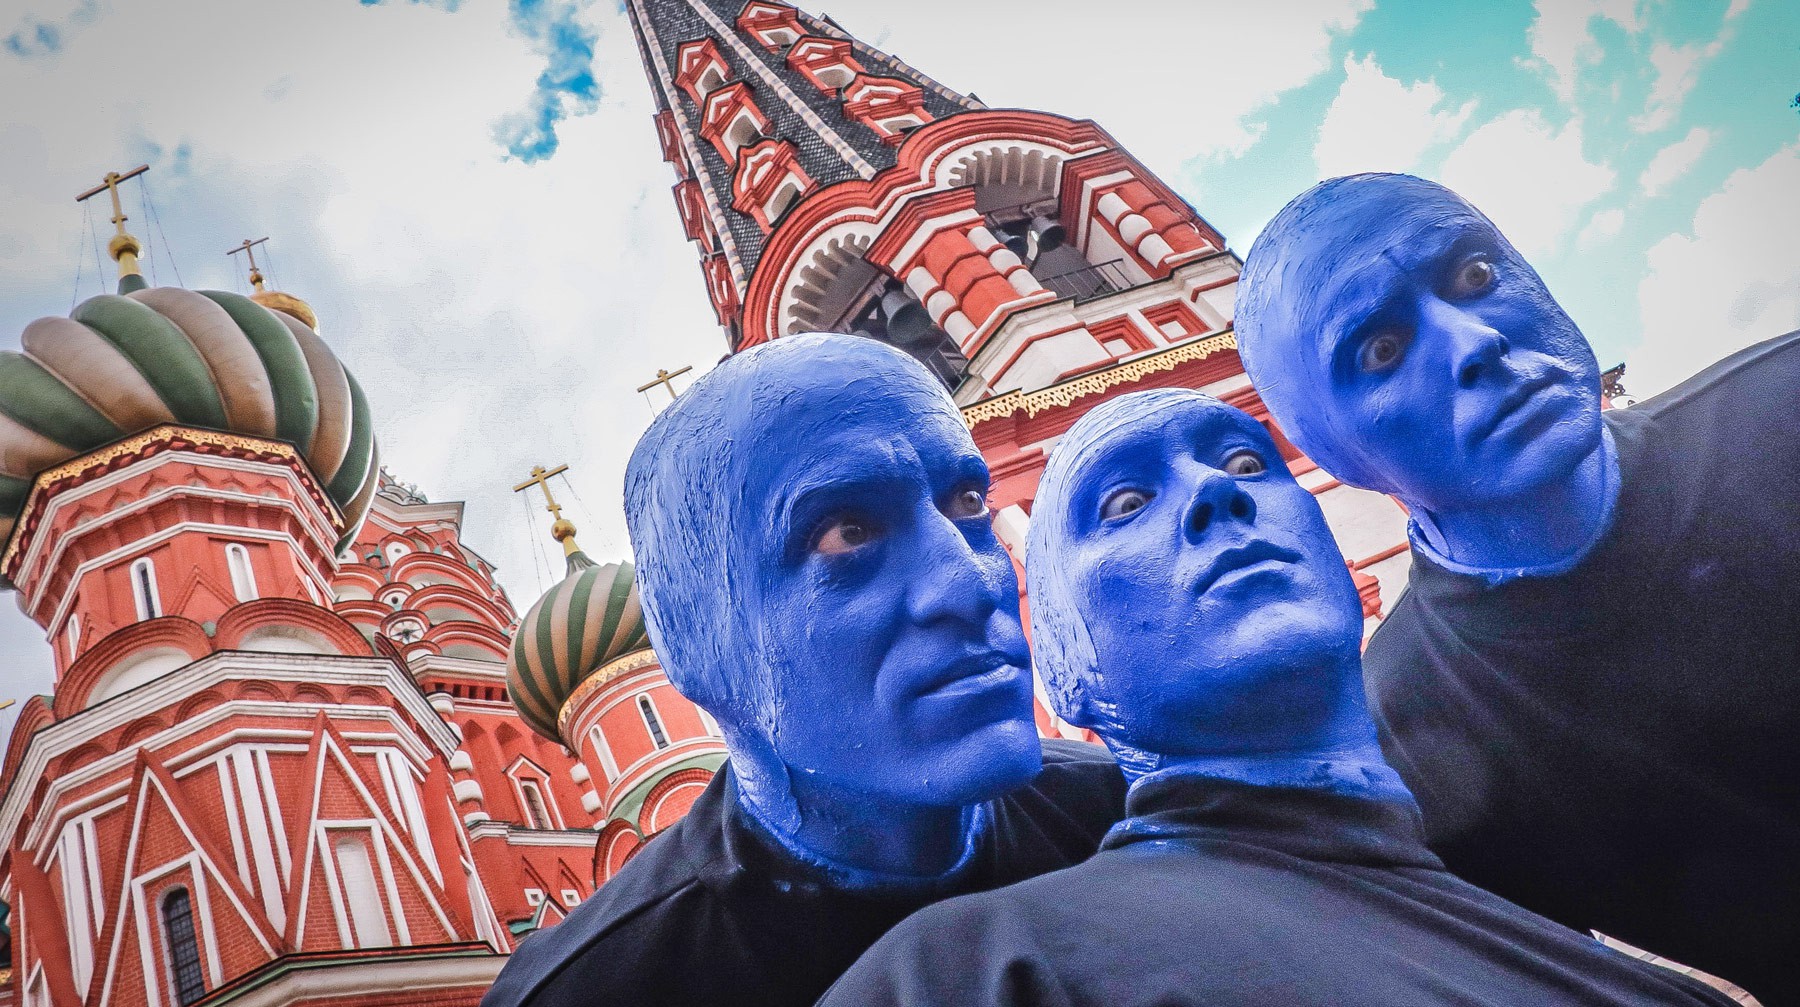 Dailystorm - Расплескалась синева: по Москве прогулялась труппа мимов из шоу Blue Man Group